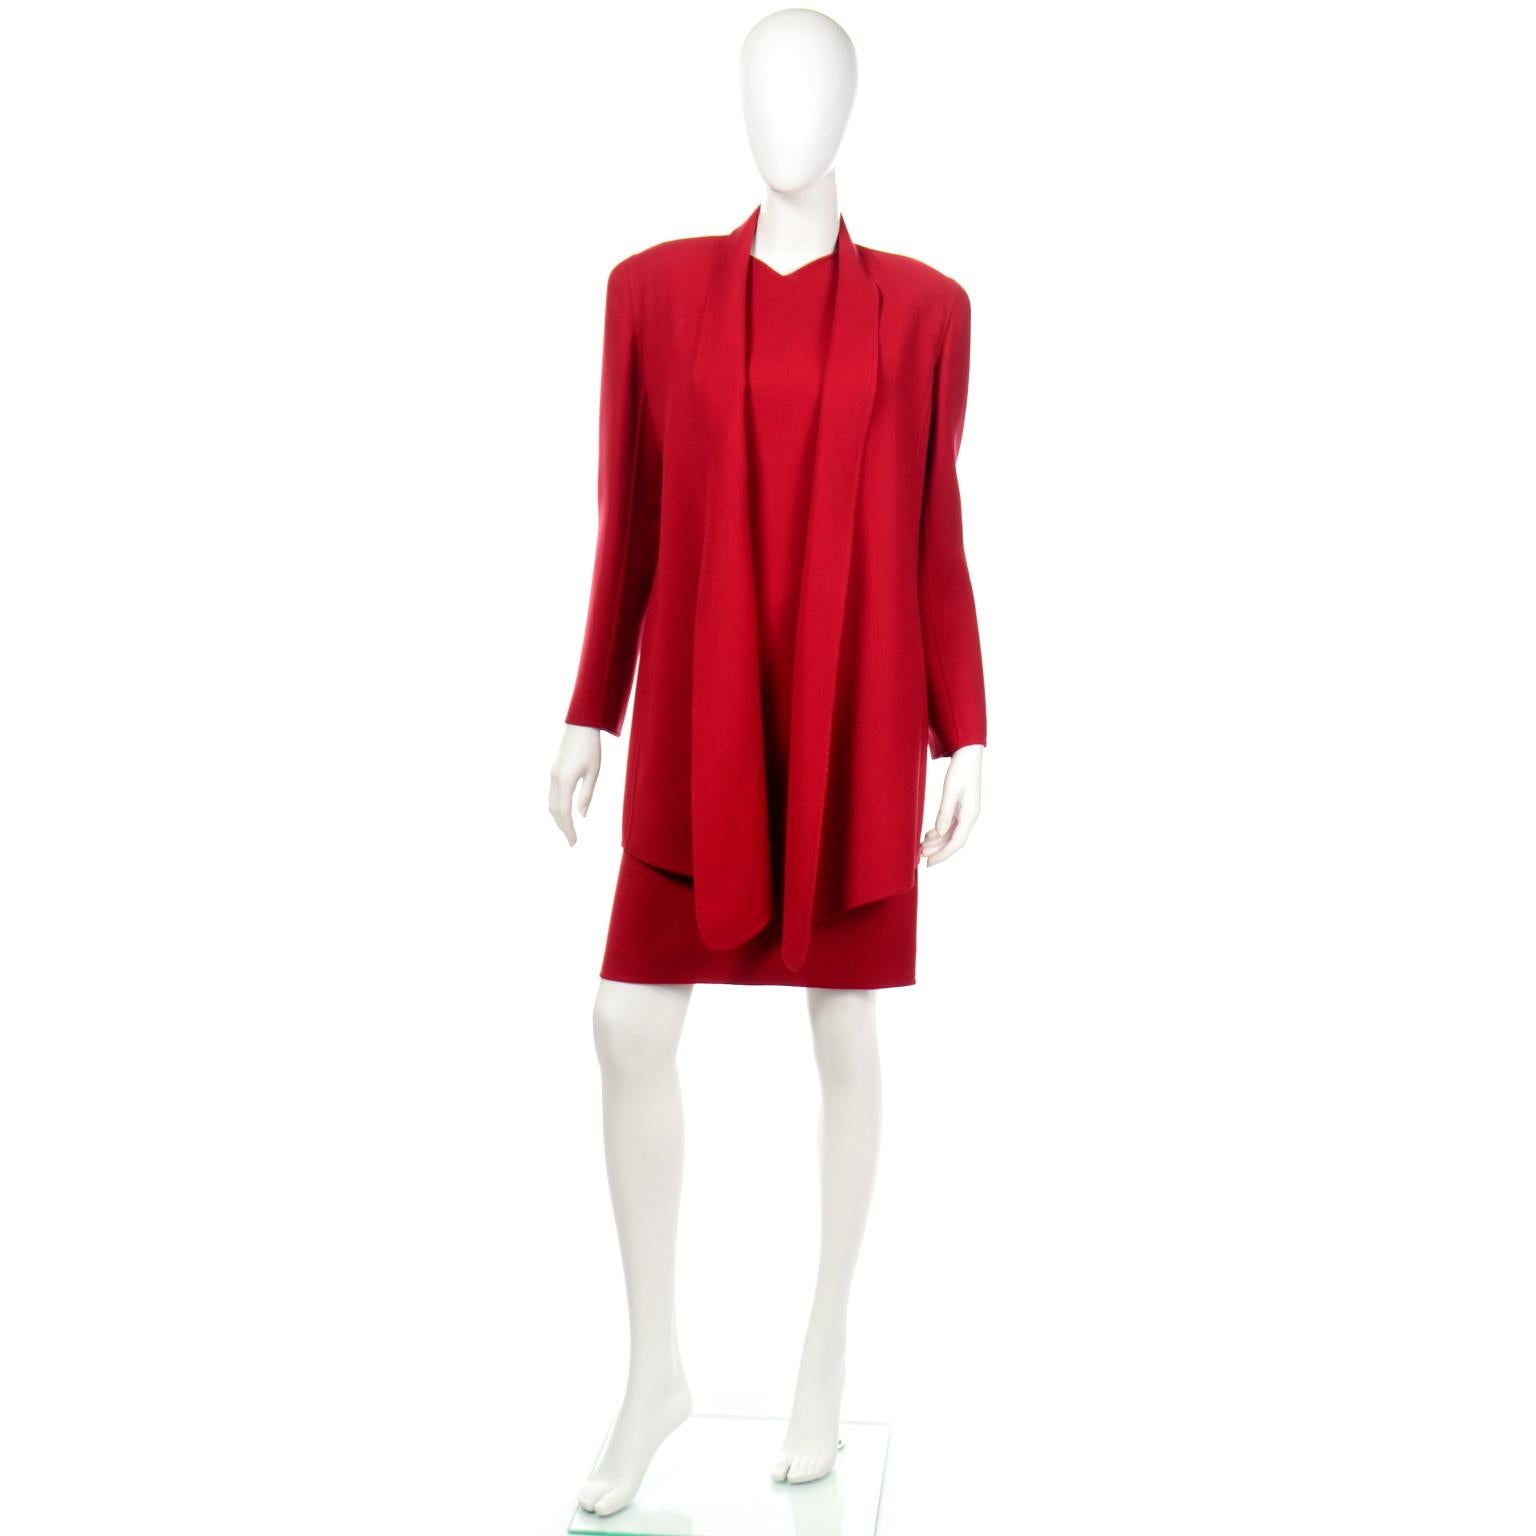 Dies ist ein 2-teiliges Vintage Oscar de la Renta Kleid und Jacke Anzug in einem reichen roten Wollmischgewebe. Dieses wunderschöne 2-teilige Ensemble besteht aus einem sehr schmeichelhaften, ärmellosen Kleid mit taillenbetonten, gesteppten Nähten.